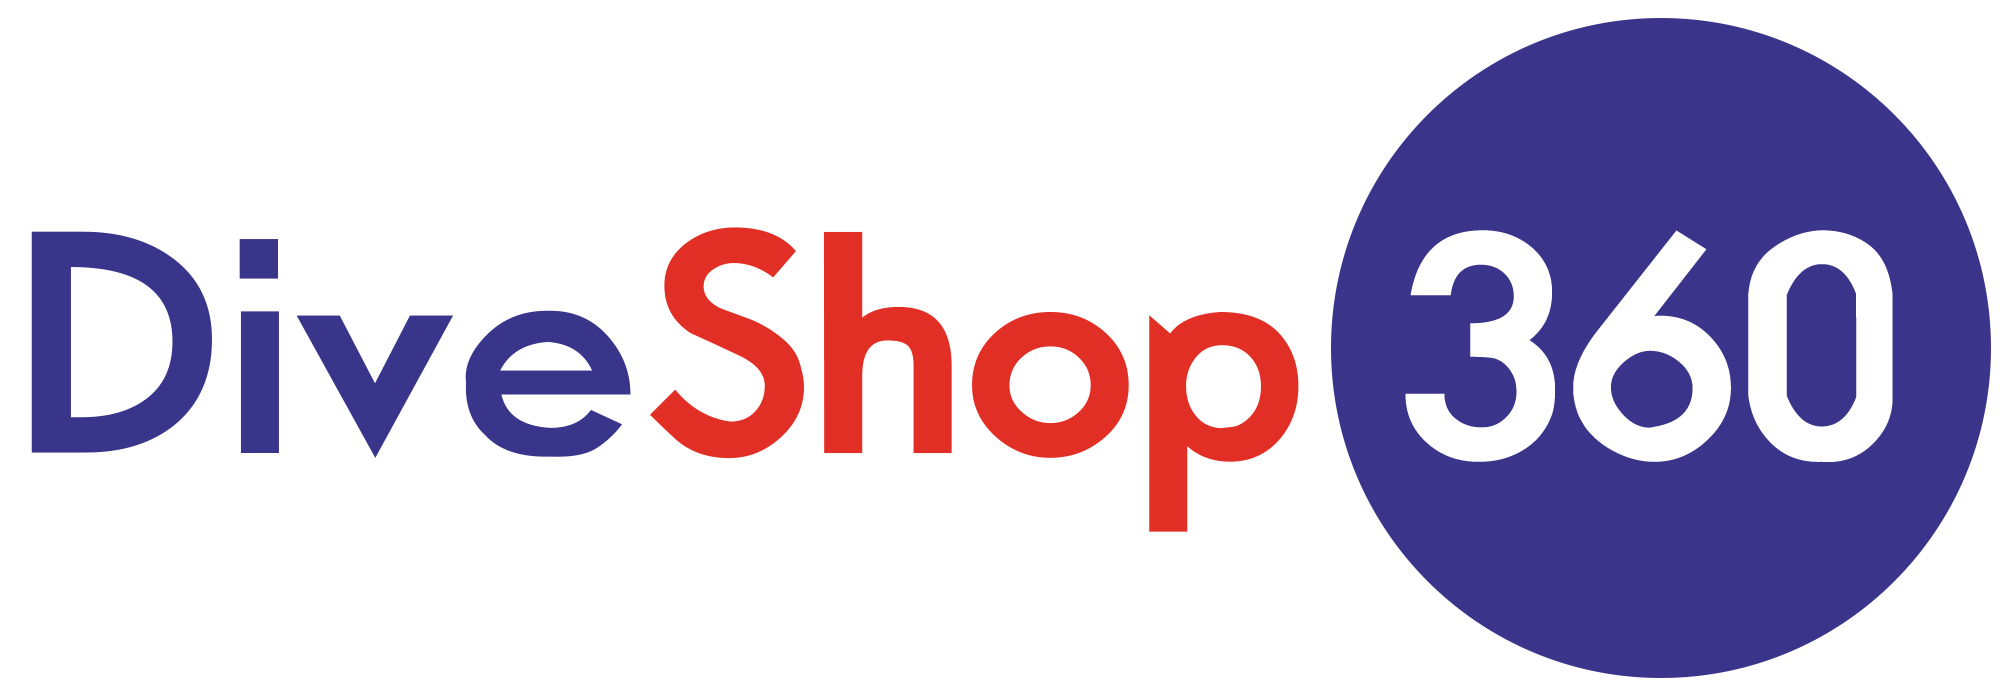 Dive Shop 360 Logo